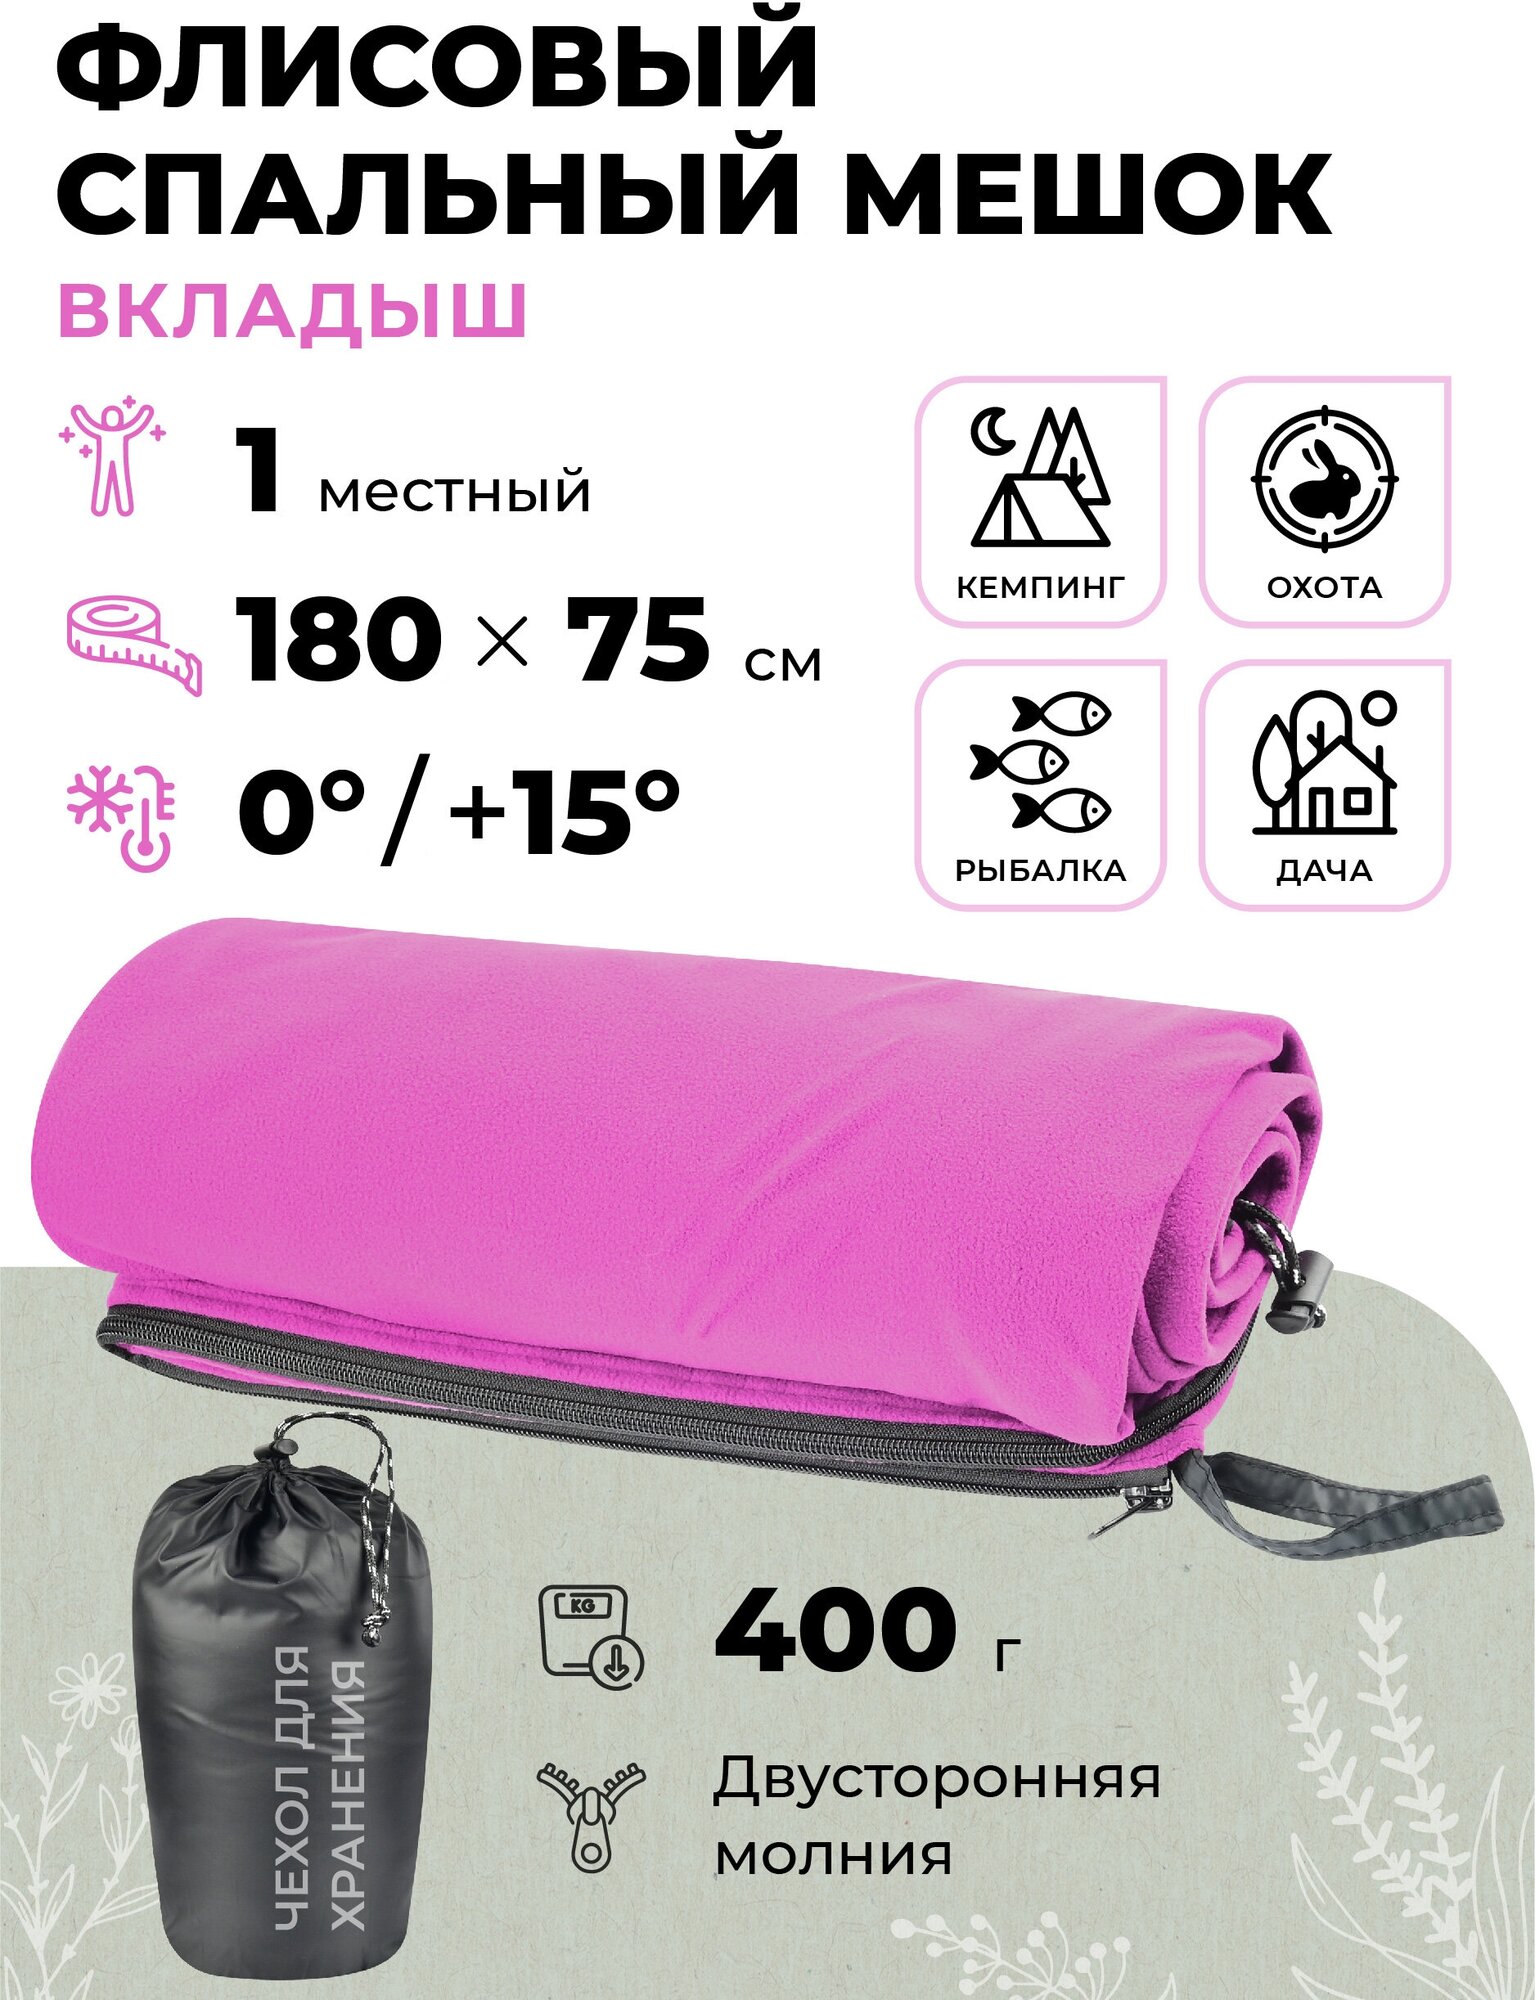 Флисовый спальный мешок-вкладыш одноместный 180х75 см/Одинарный вкладыш в спальник туристический/Походное одеяло для кемпинга